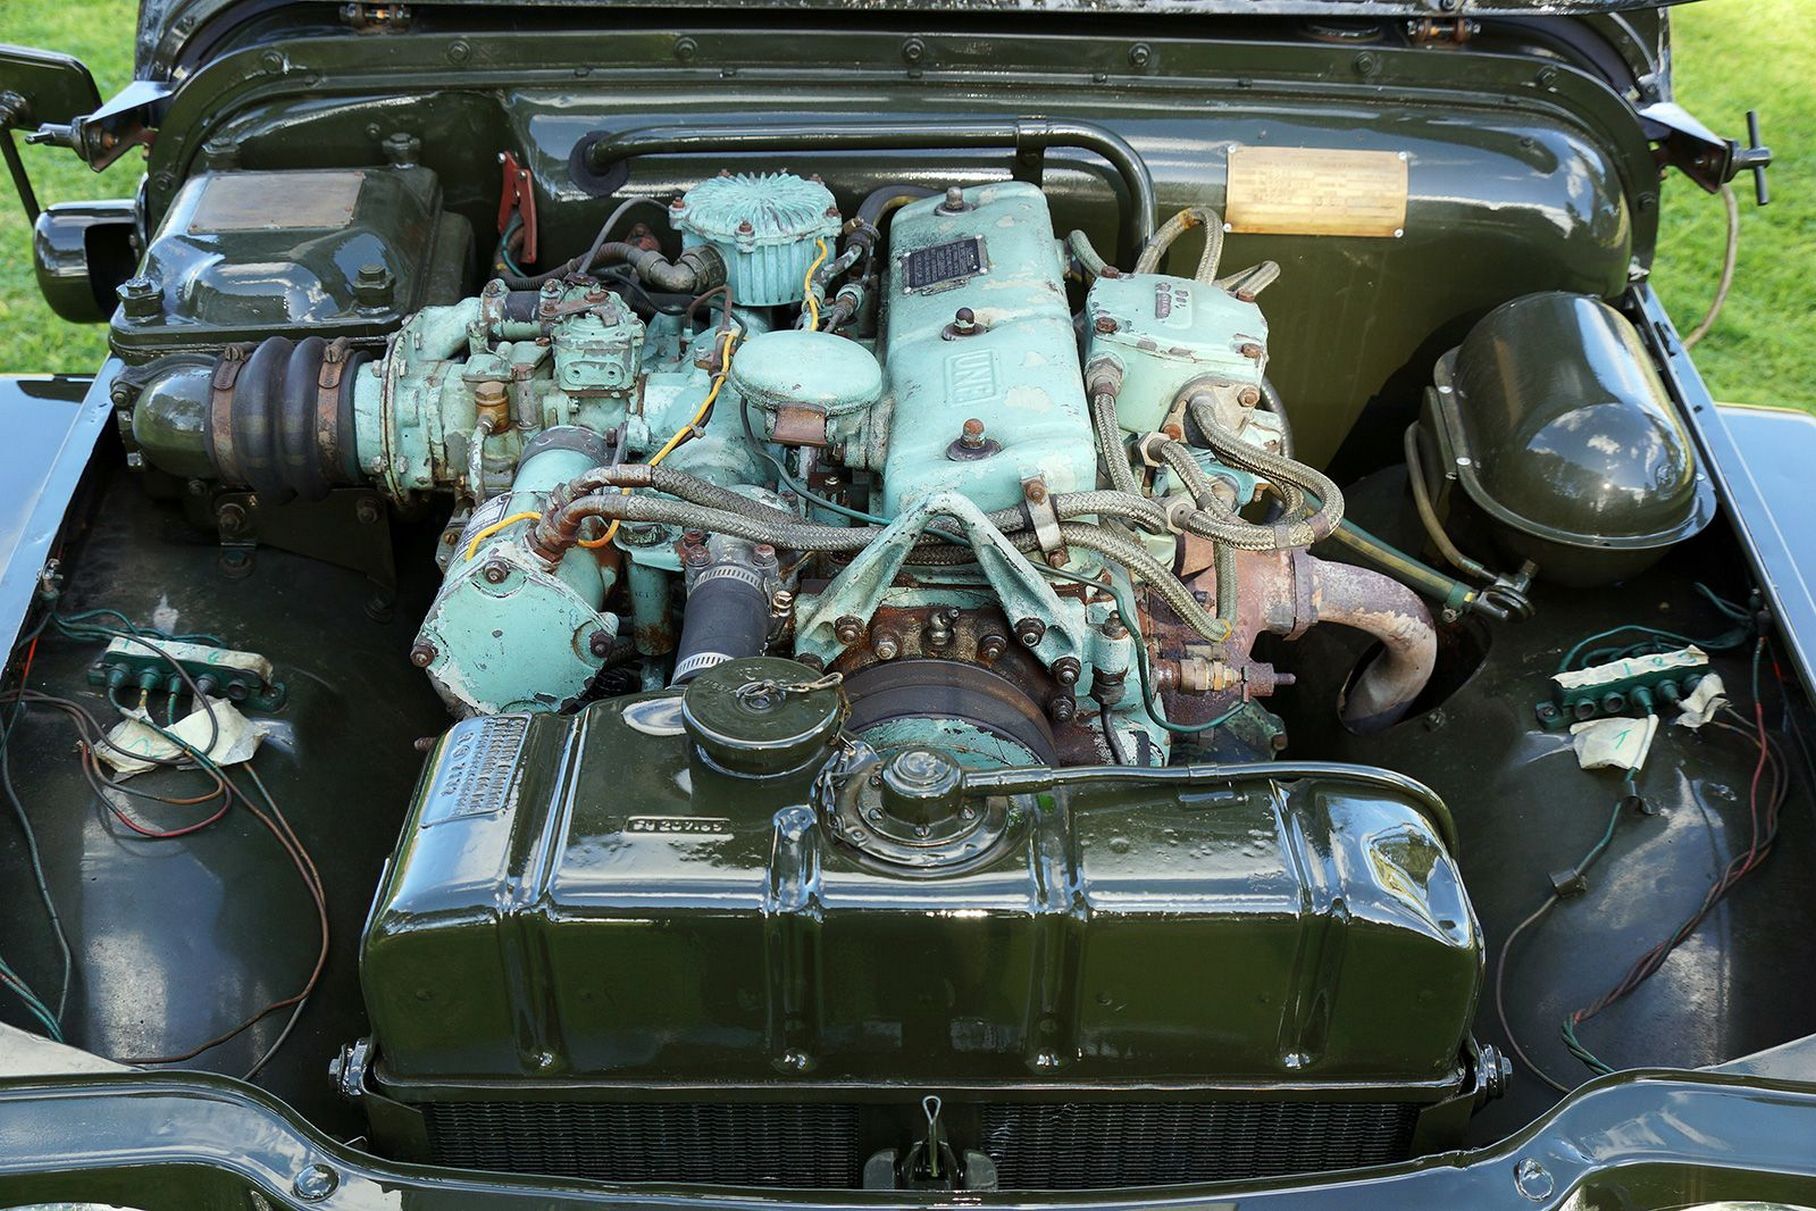 Четырёхцилиндровый двигатель Rolls-Royce B40 объёмом 2,8 литра развивал максимальные 200 Нм всего при 1750 оборотах в минуту